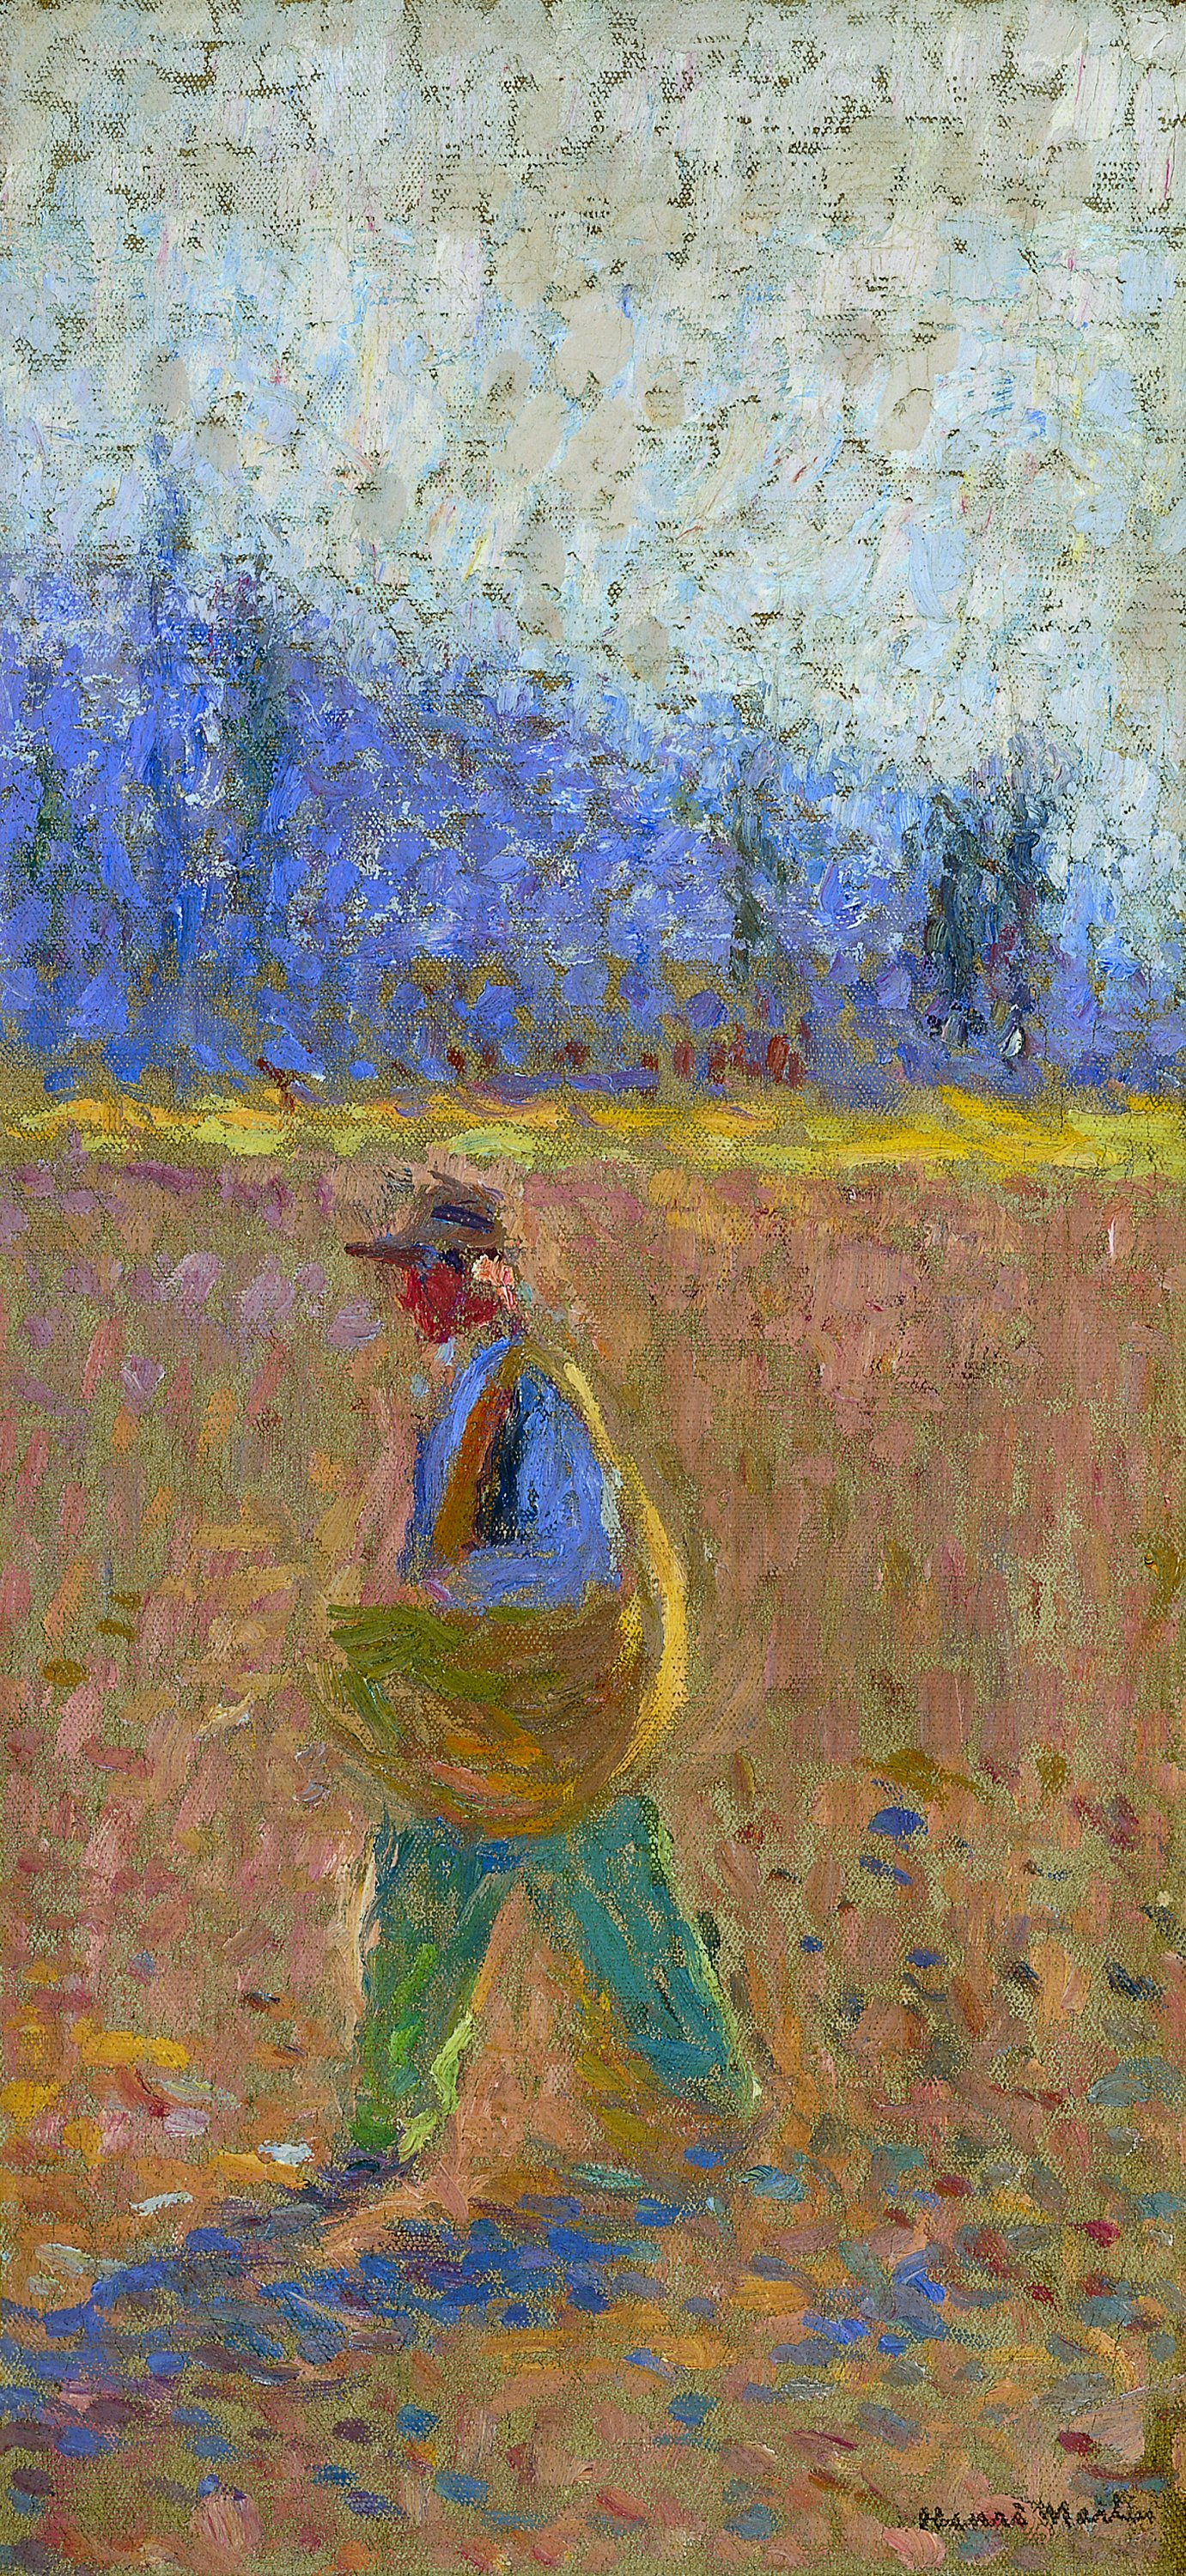 The Sower. El sembrador, c. 1914-1920